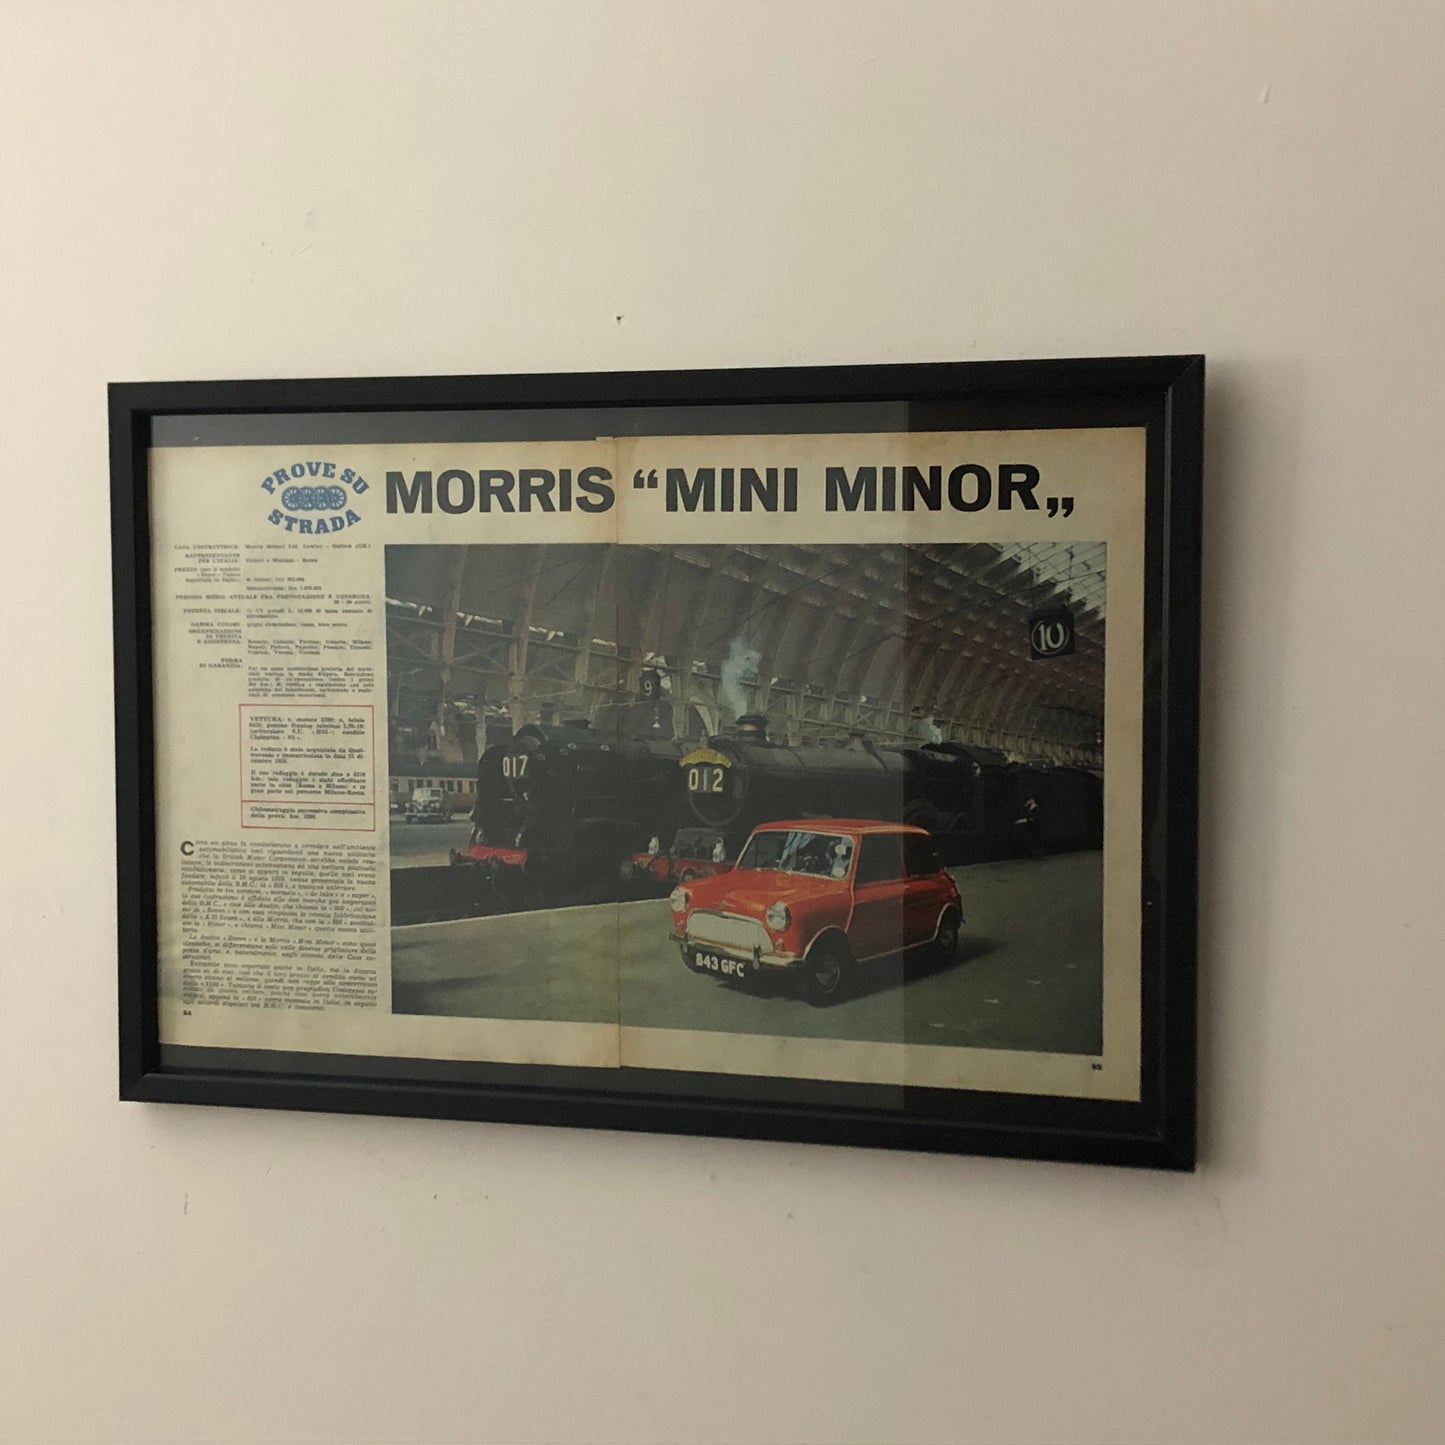 Morris Pubblicità Anno 1960 Morris Mini Minor Prova su Strada con Didascalia in Italiano